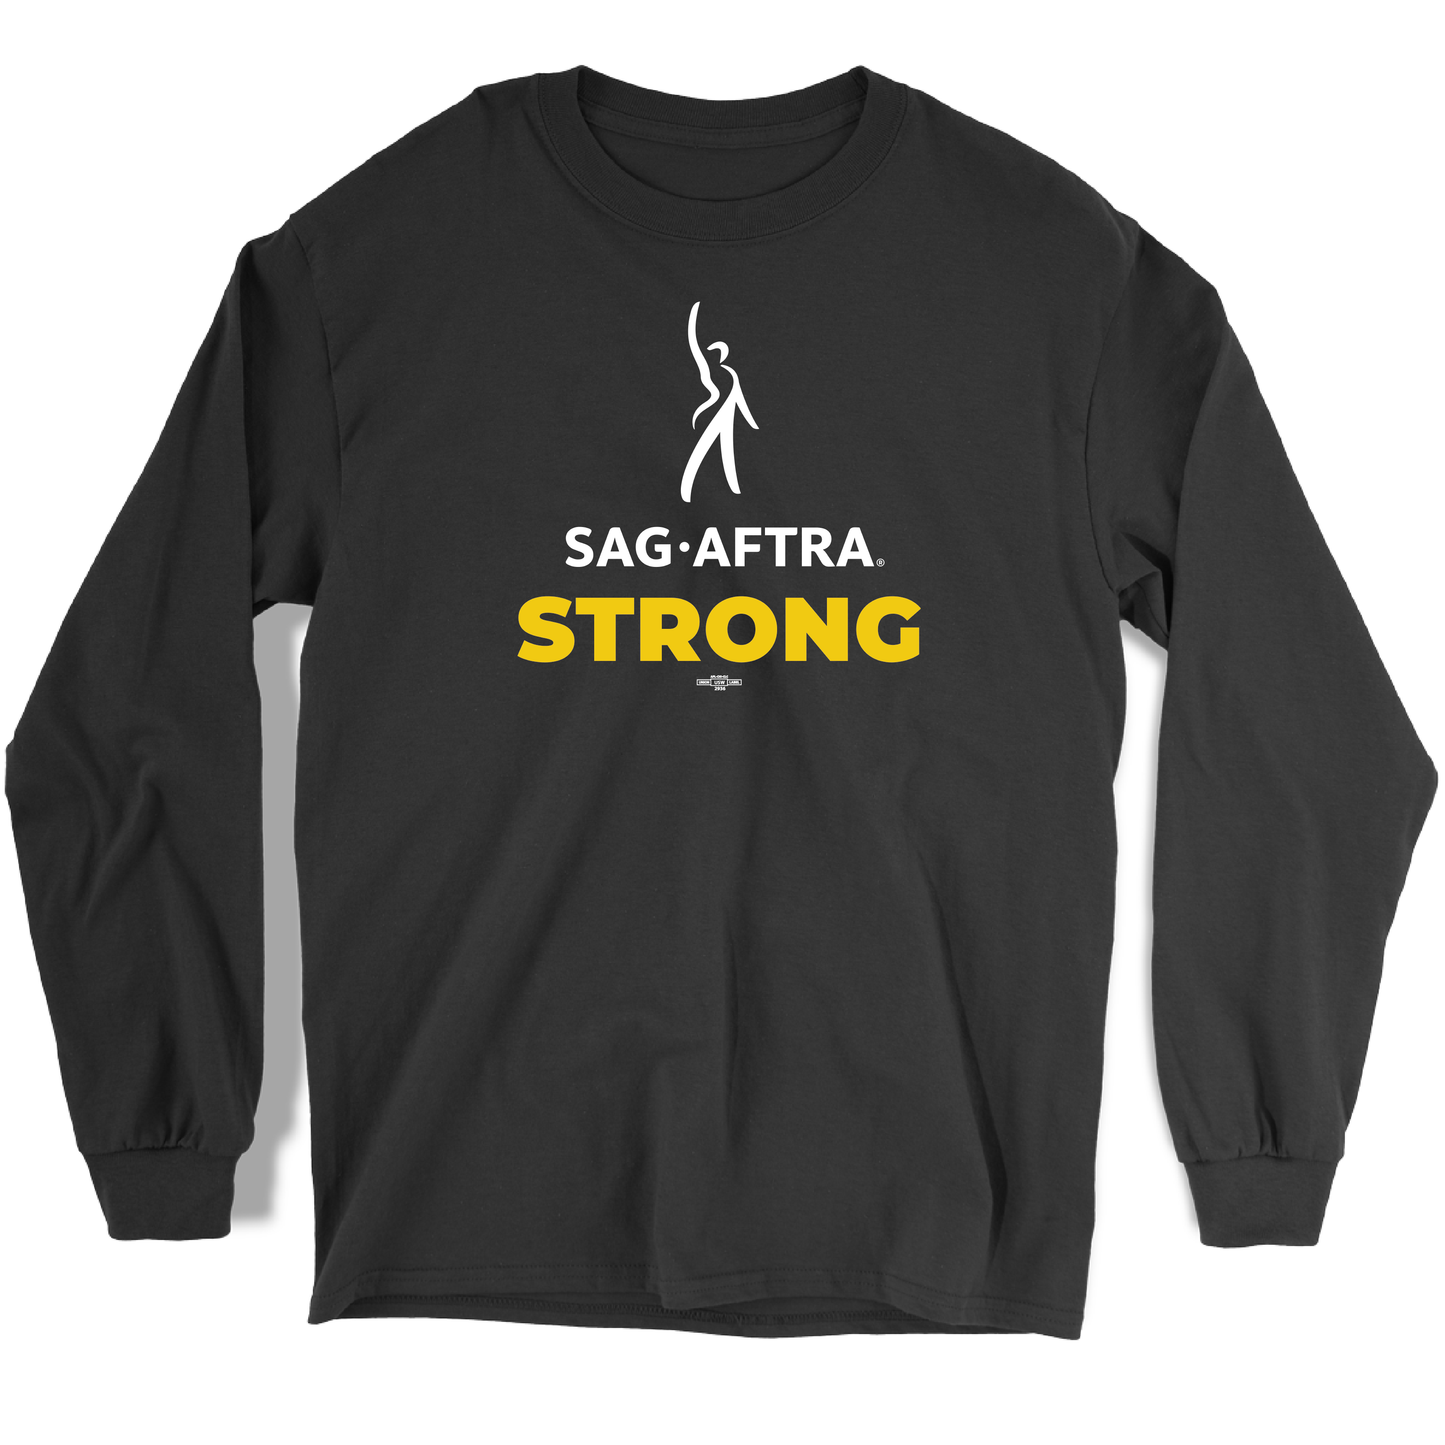 SAG-AFTRA STRONG Long Sleeve Tee